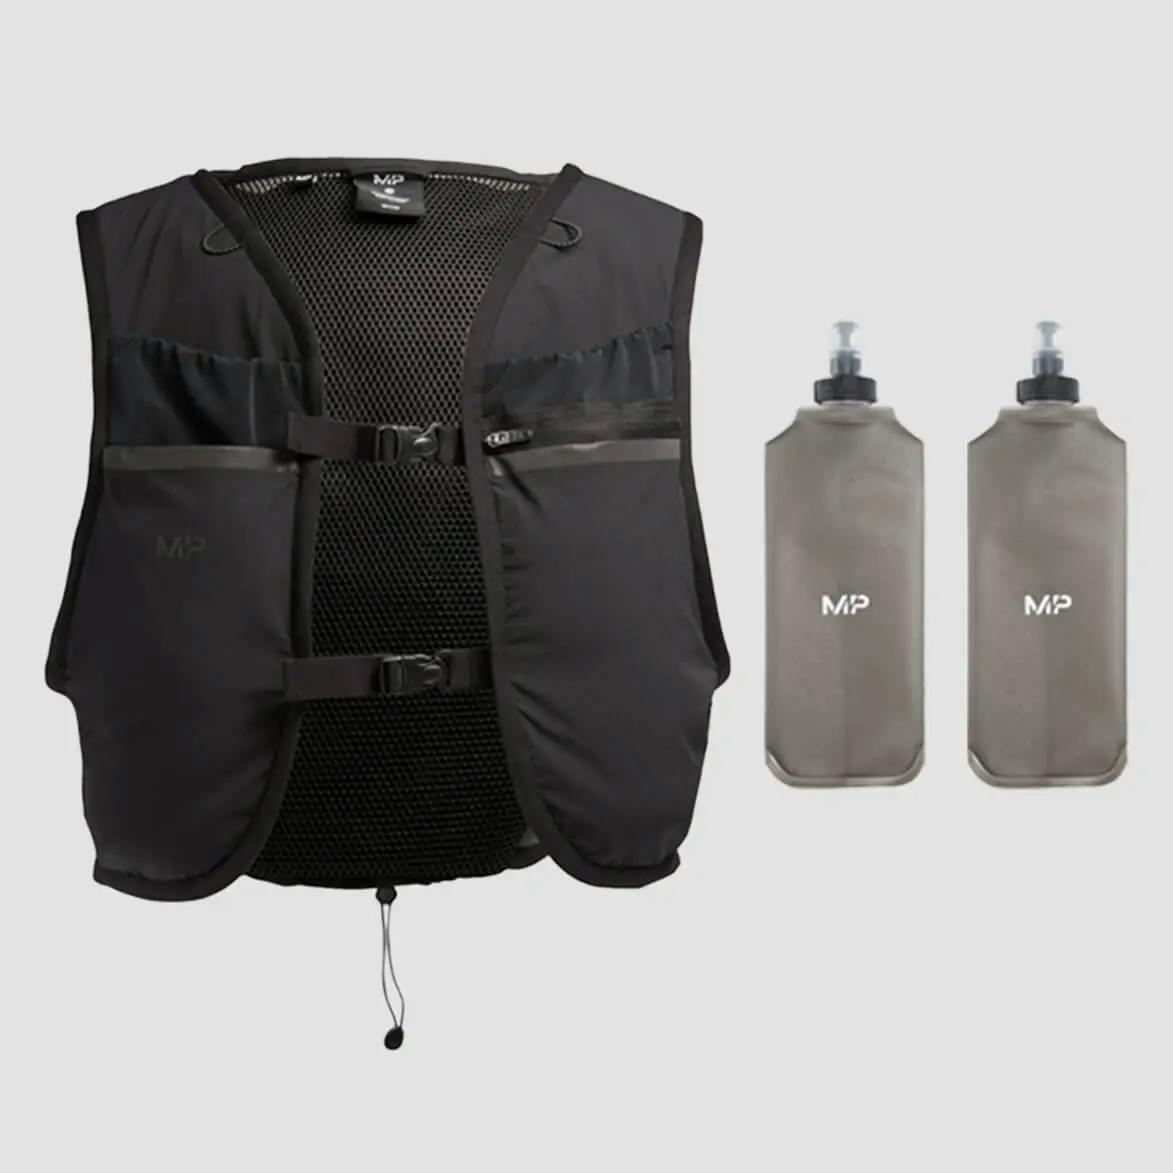 hydration vest